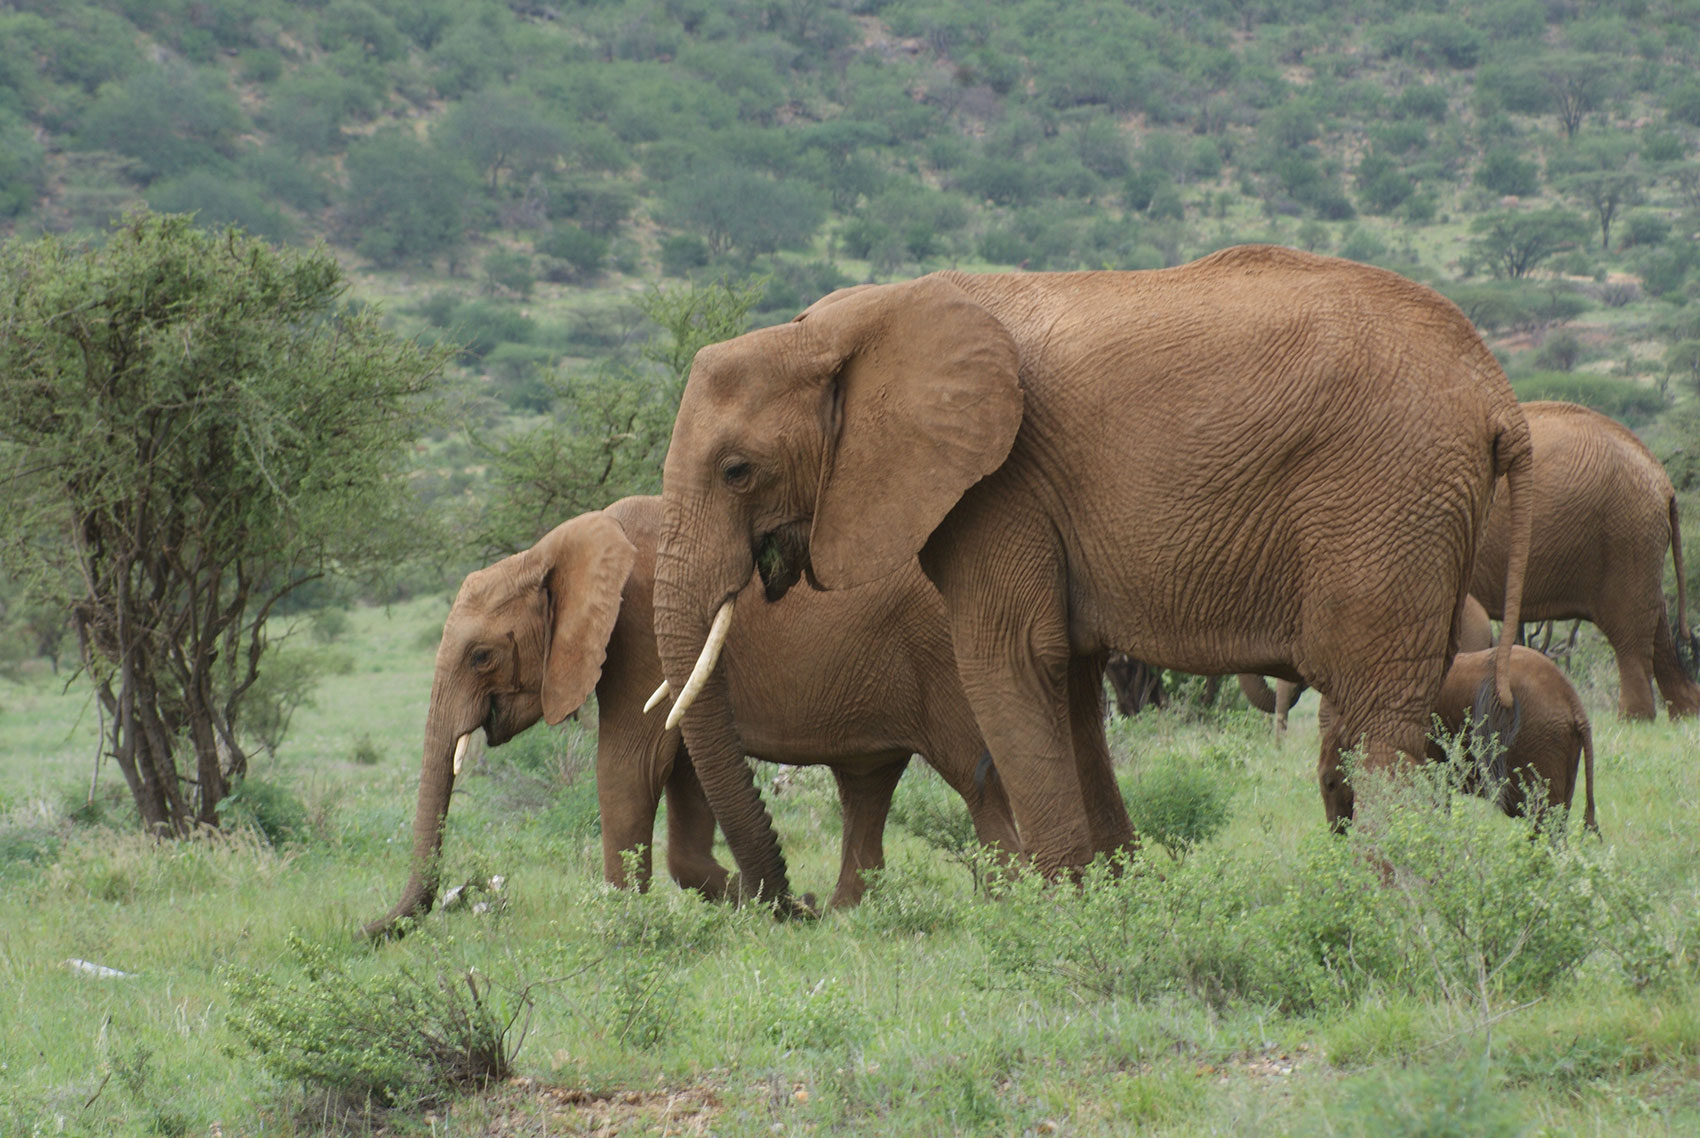 Elepehants on African Safari